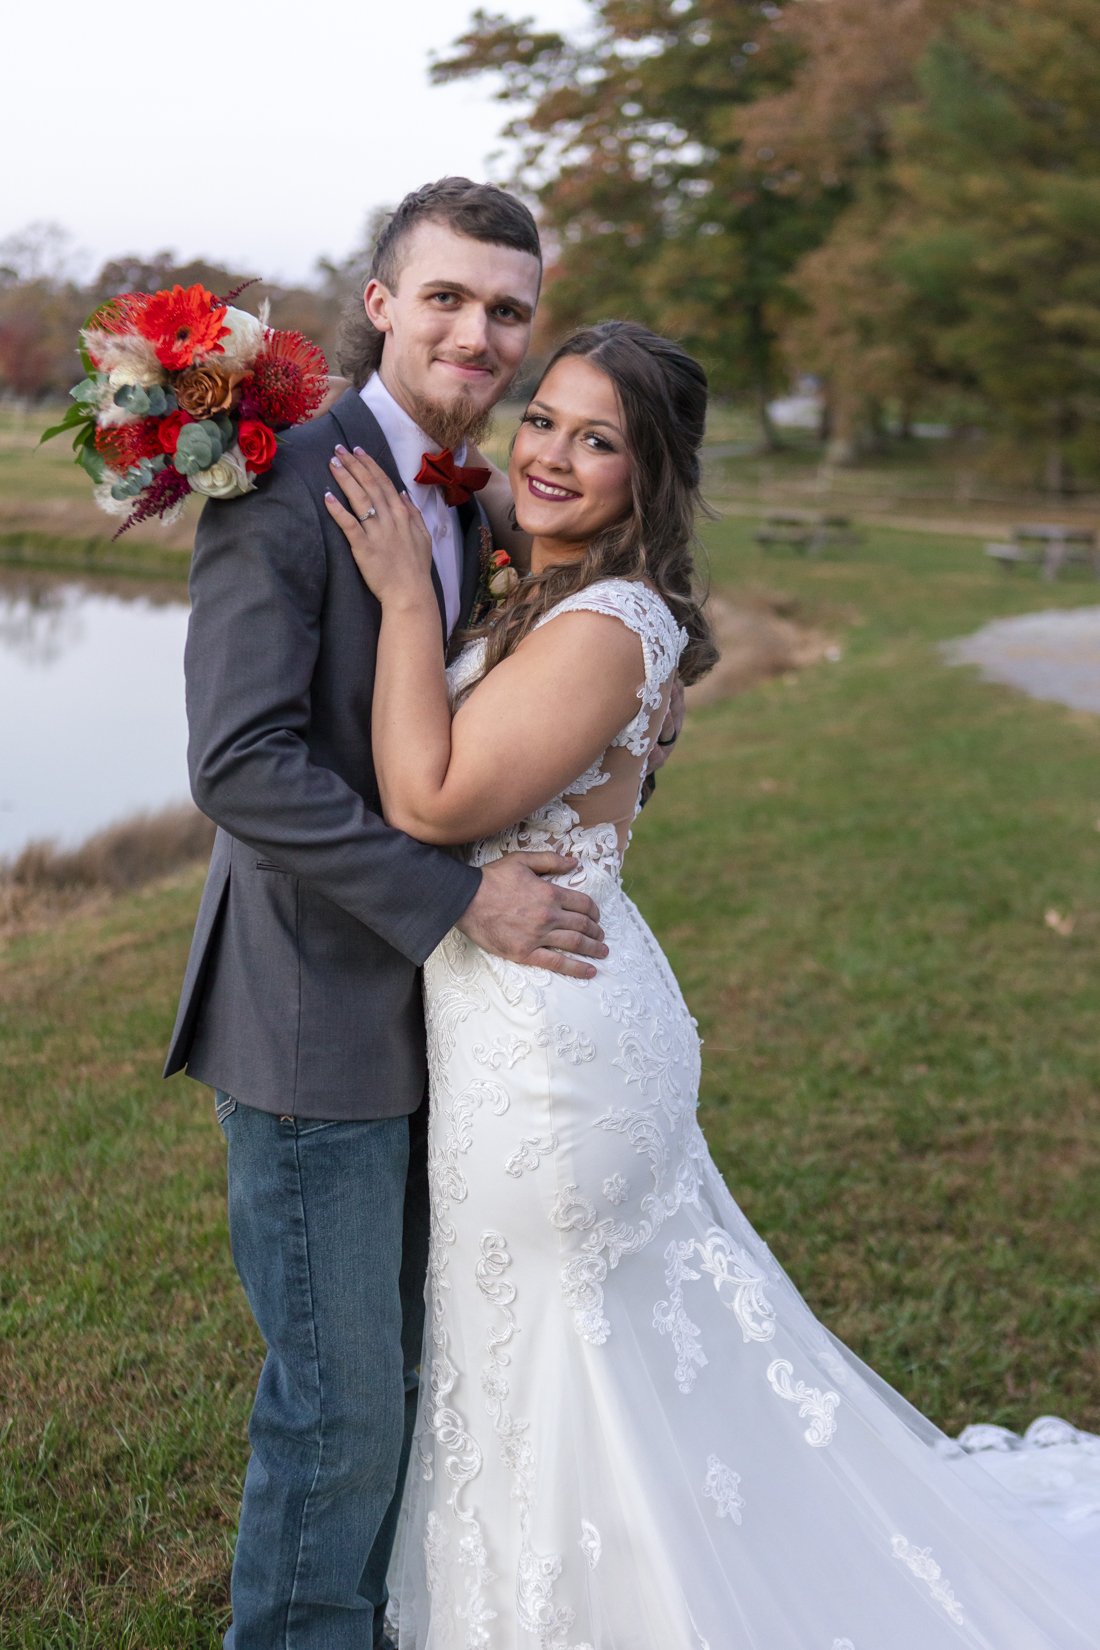 Tori and Hunter Wedding at Taylor Ranch Asheville NC- Photos by Studio Misha-73.jpg